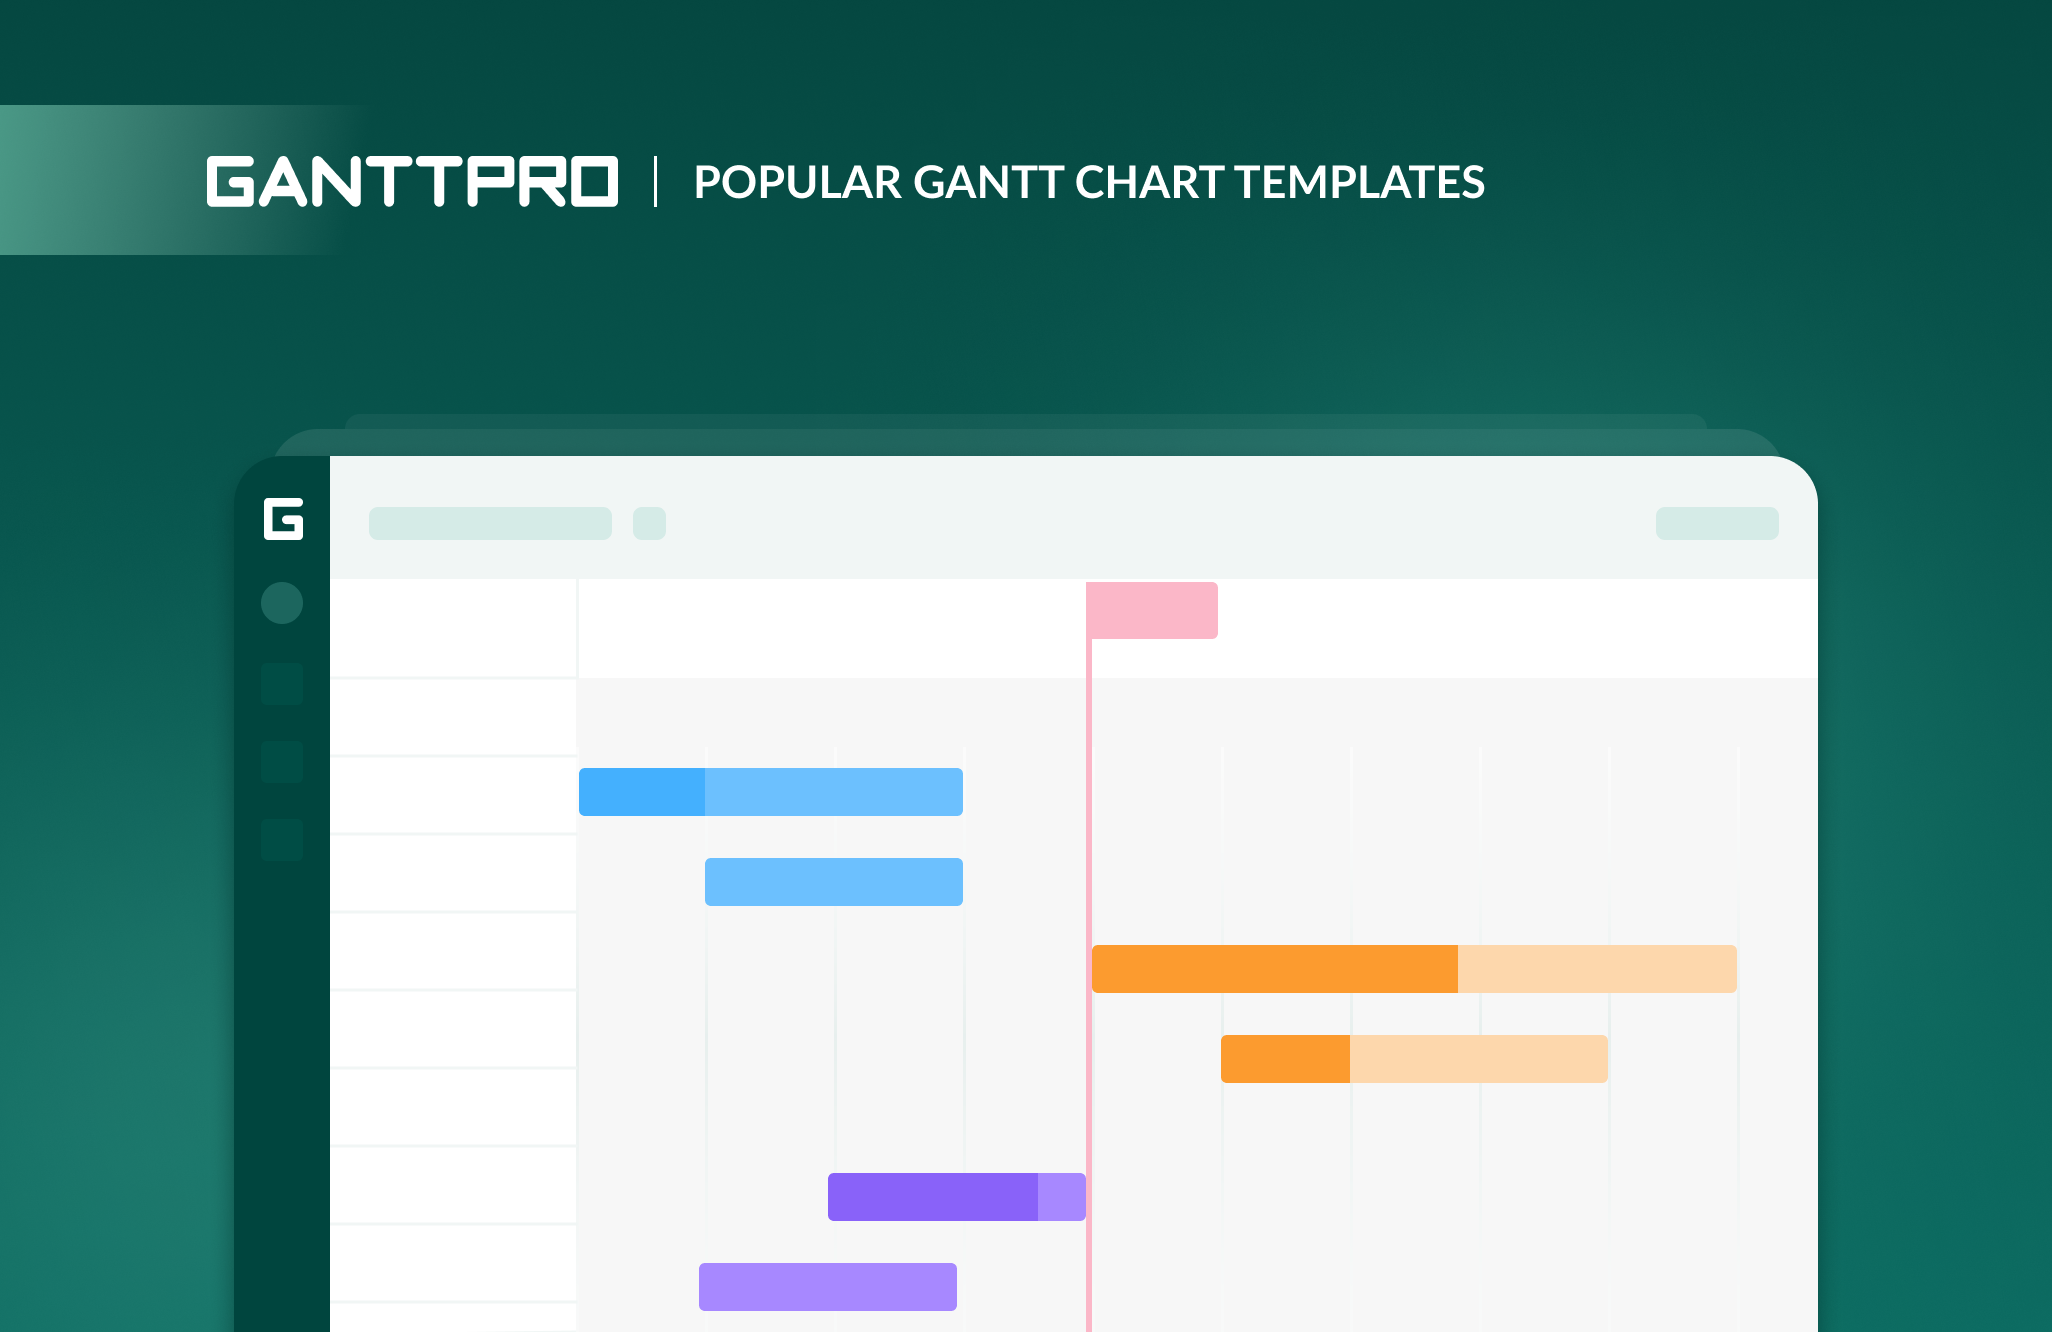 Project Gantt chart templates